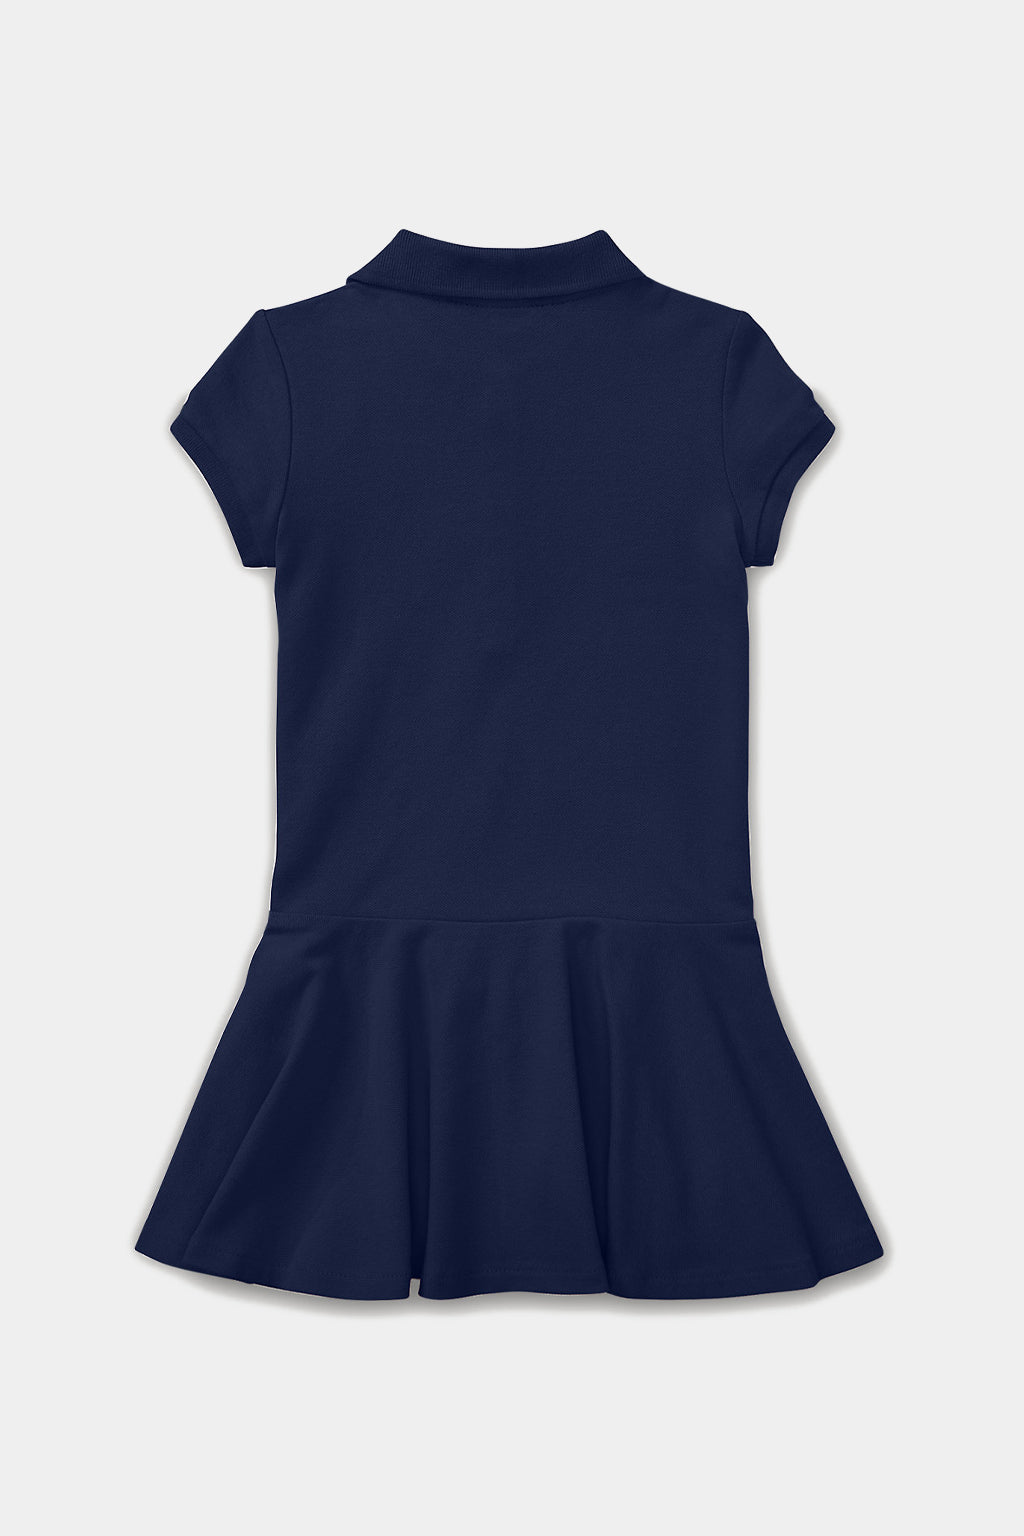 Ralph Lauren - Short-Sleeve Polo Dress